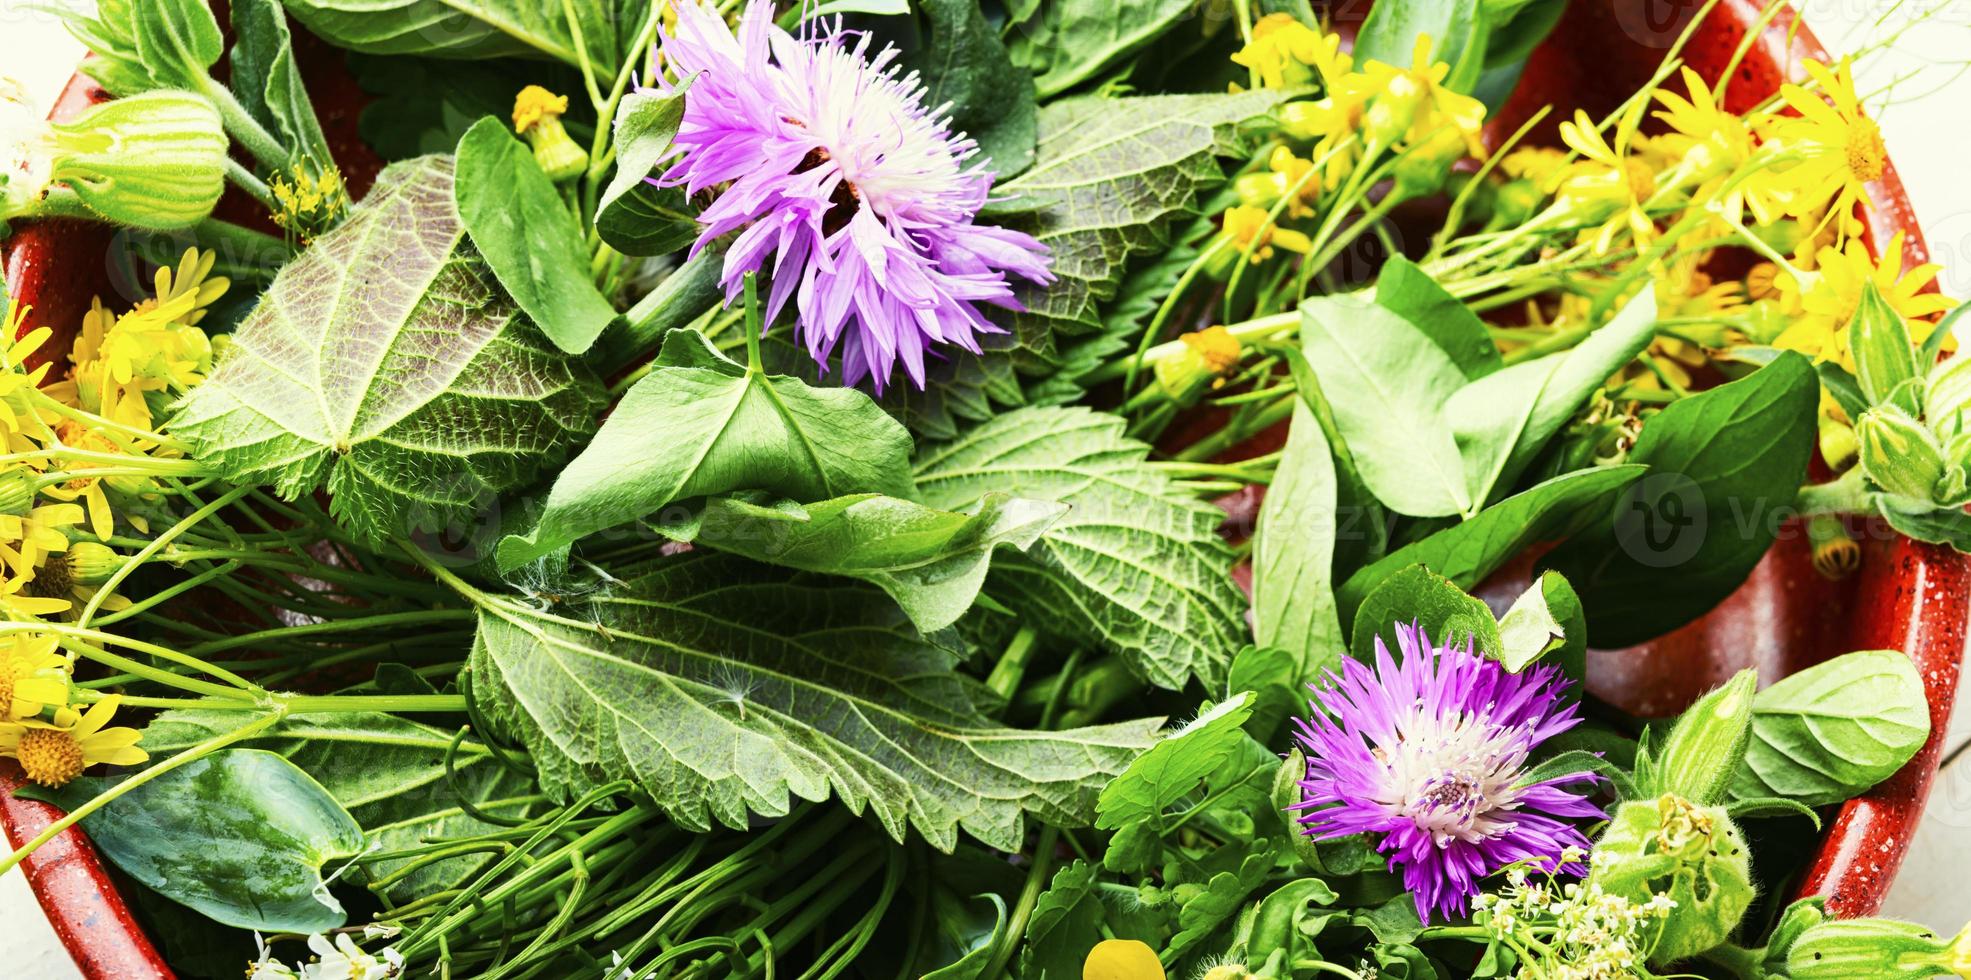 naturale medicina, fresco erbe aromatiche foto